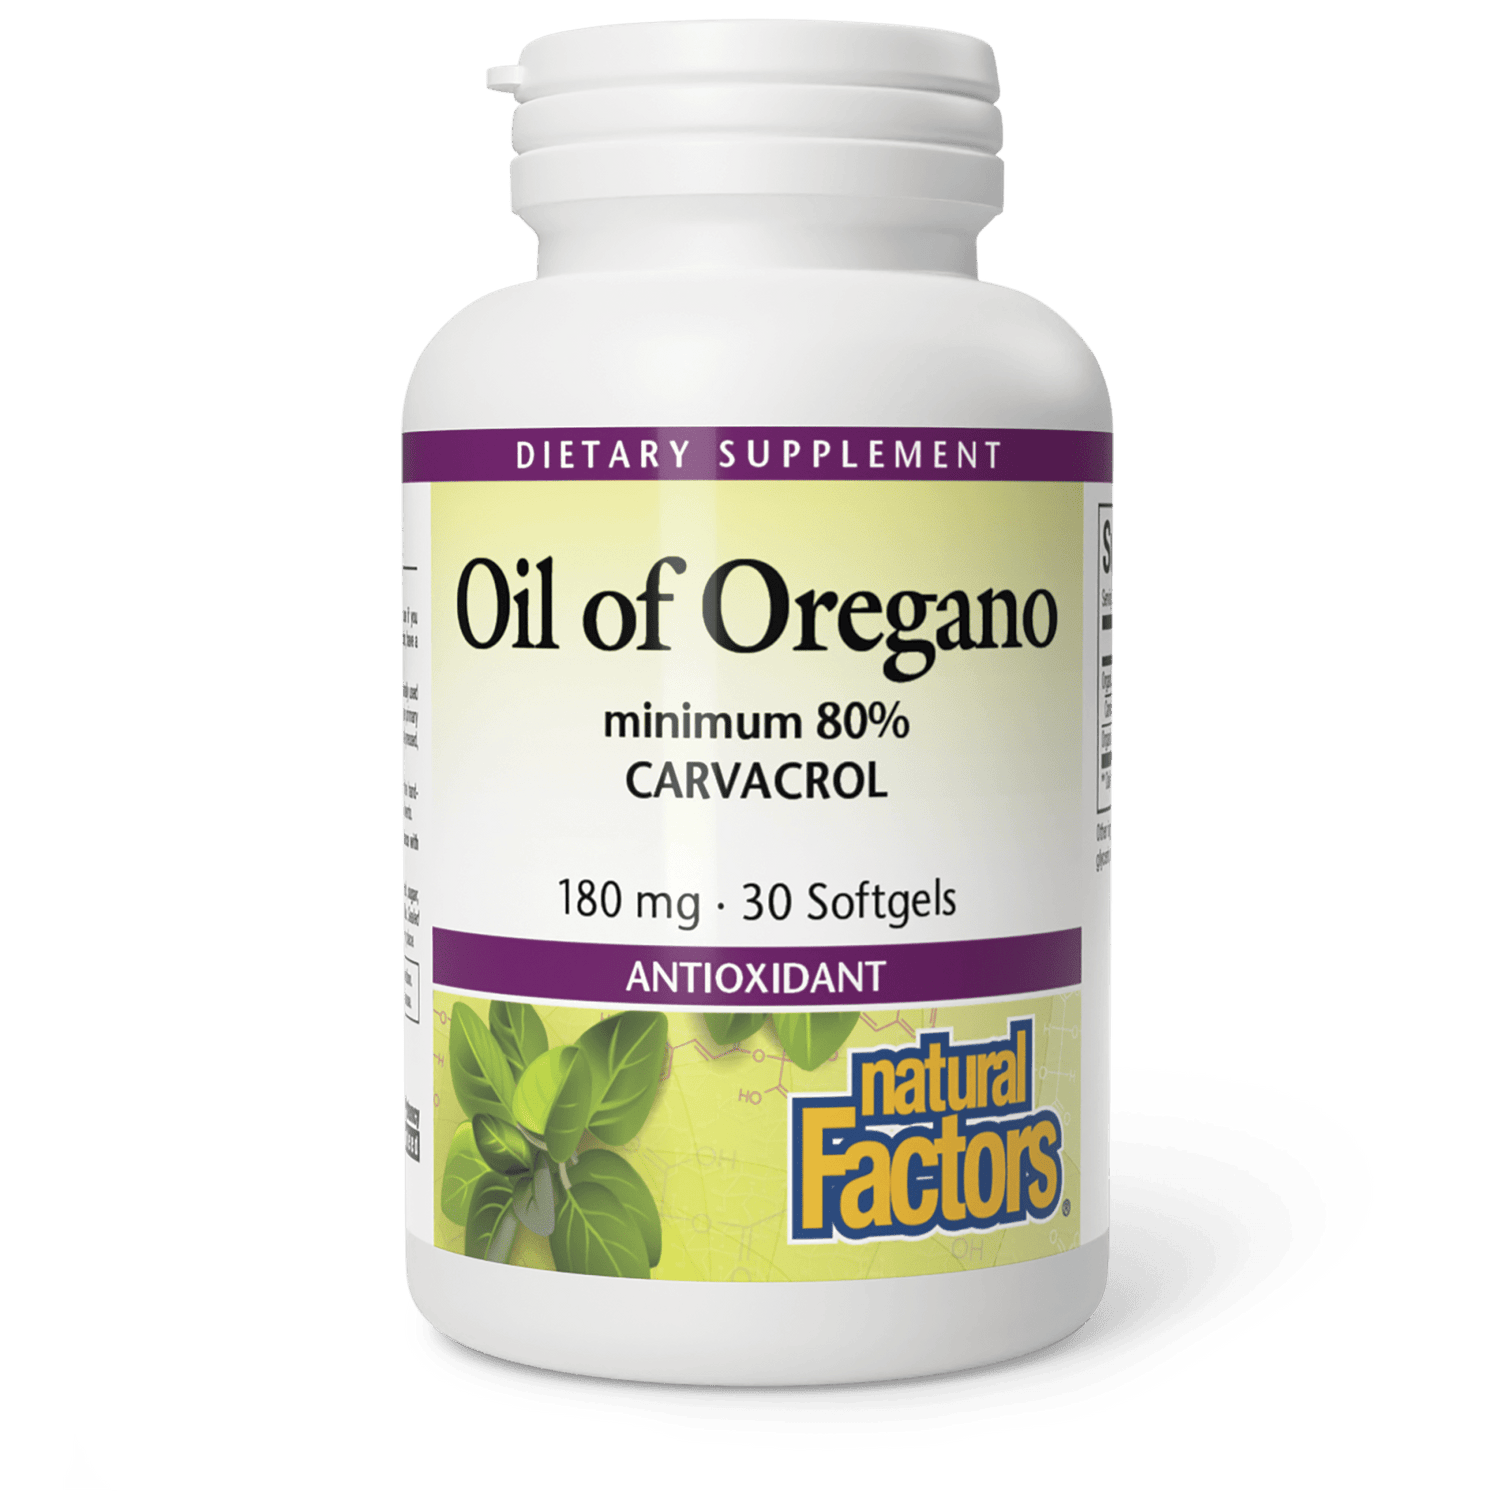 Oil of Oregano|variant|hi-res|4573U